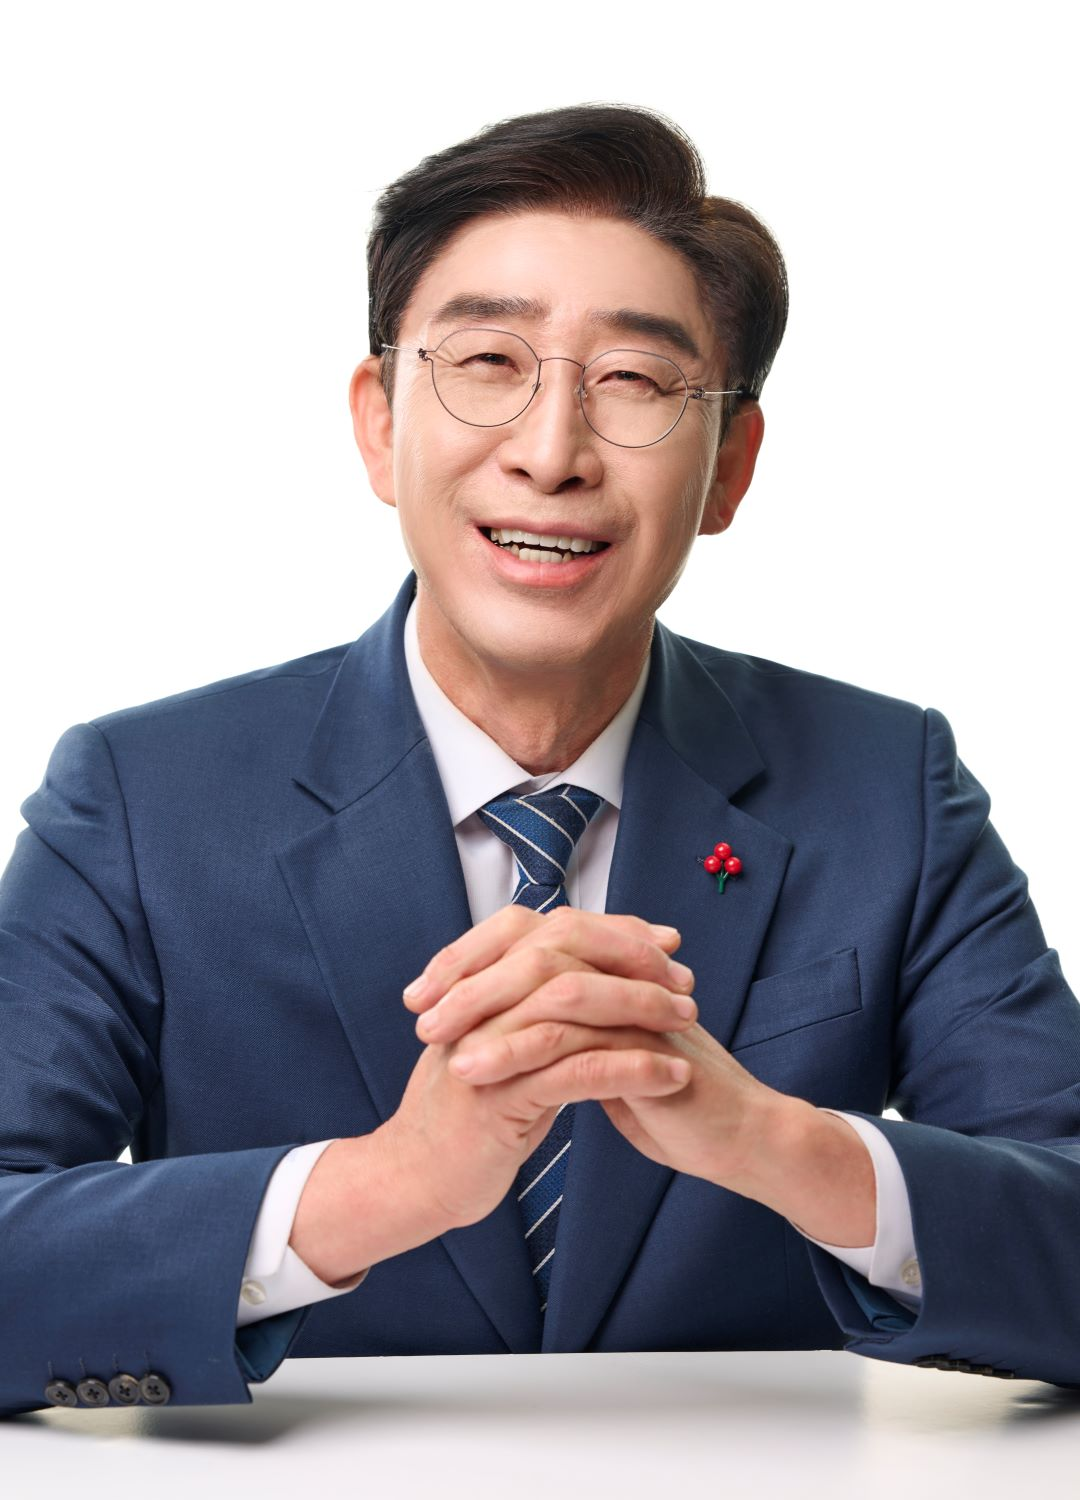 더불어민주당 조광휘 국회의원 예비후보